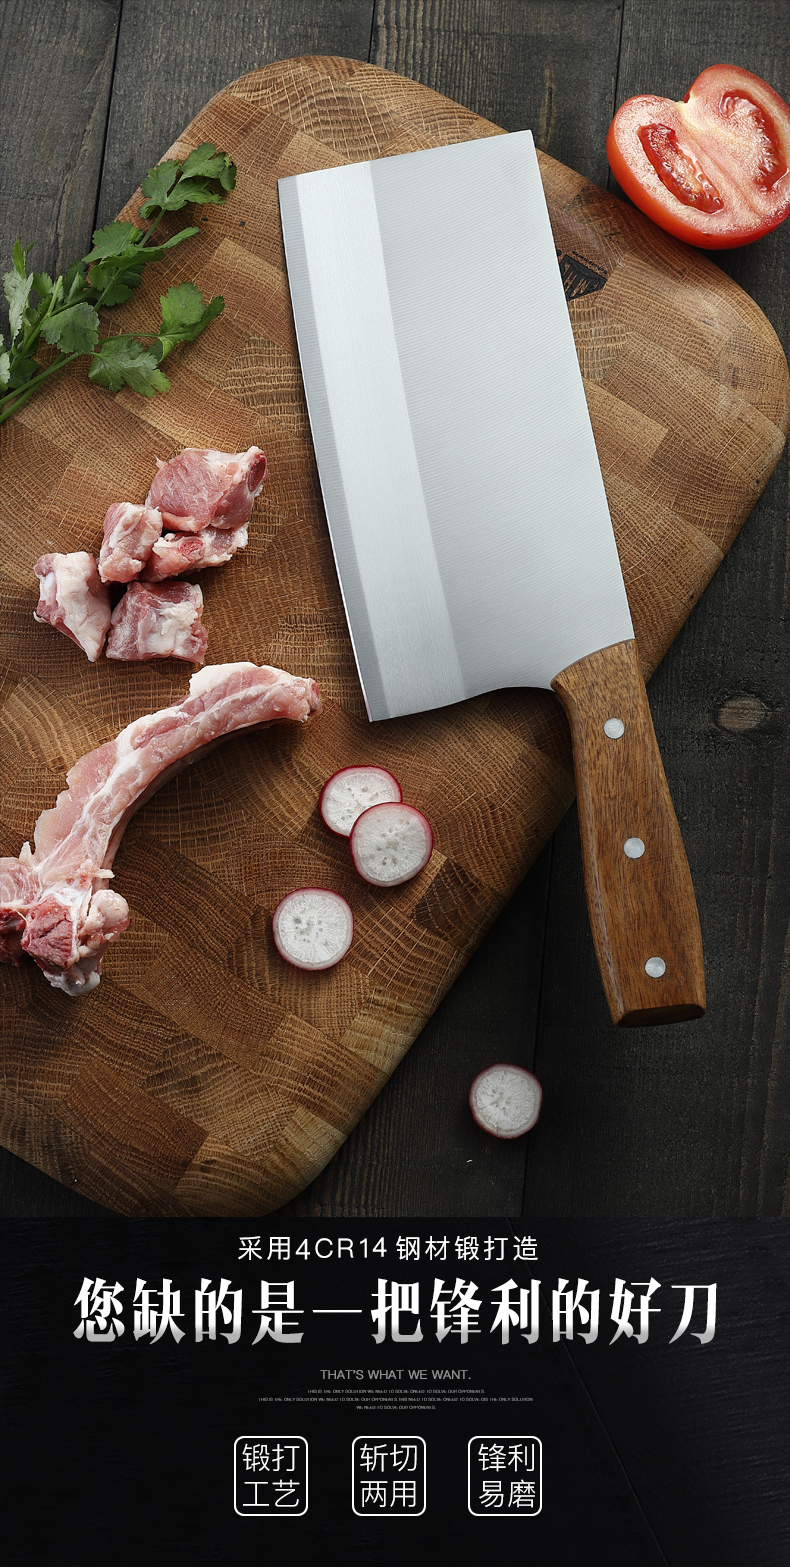 切菜刀厨房家用锋利切肉刀厨师刀专用菜刀切片刀锰钢不锈钢刀具